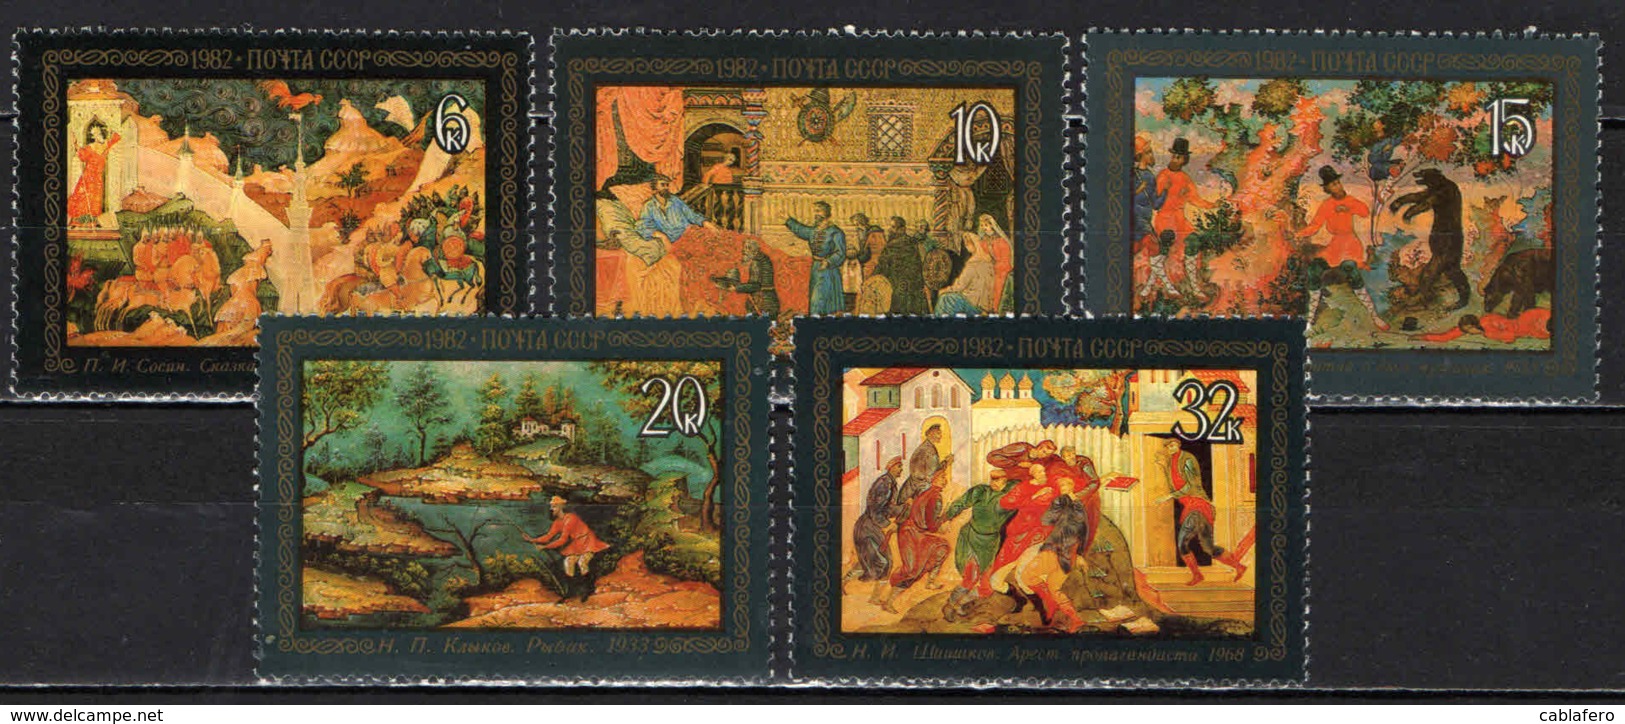 URSS - 1982 - Lacquerware Paintings, Ustera - MNH - Nuovi